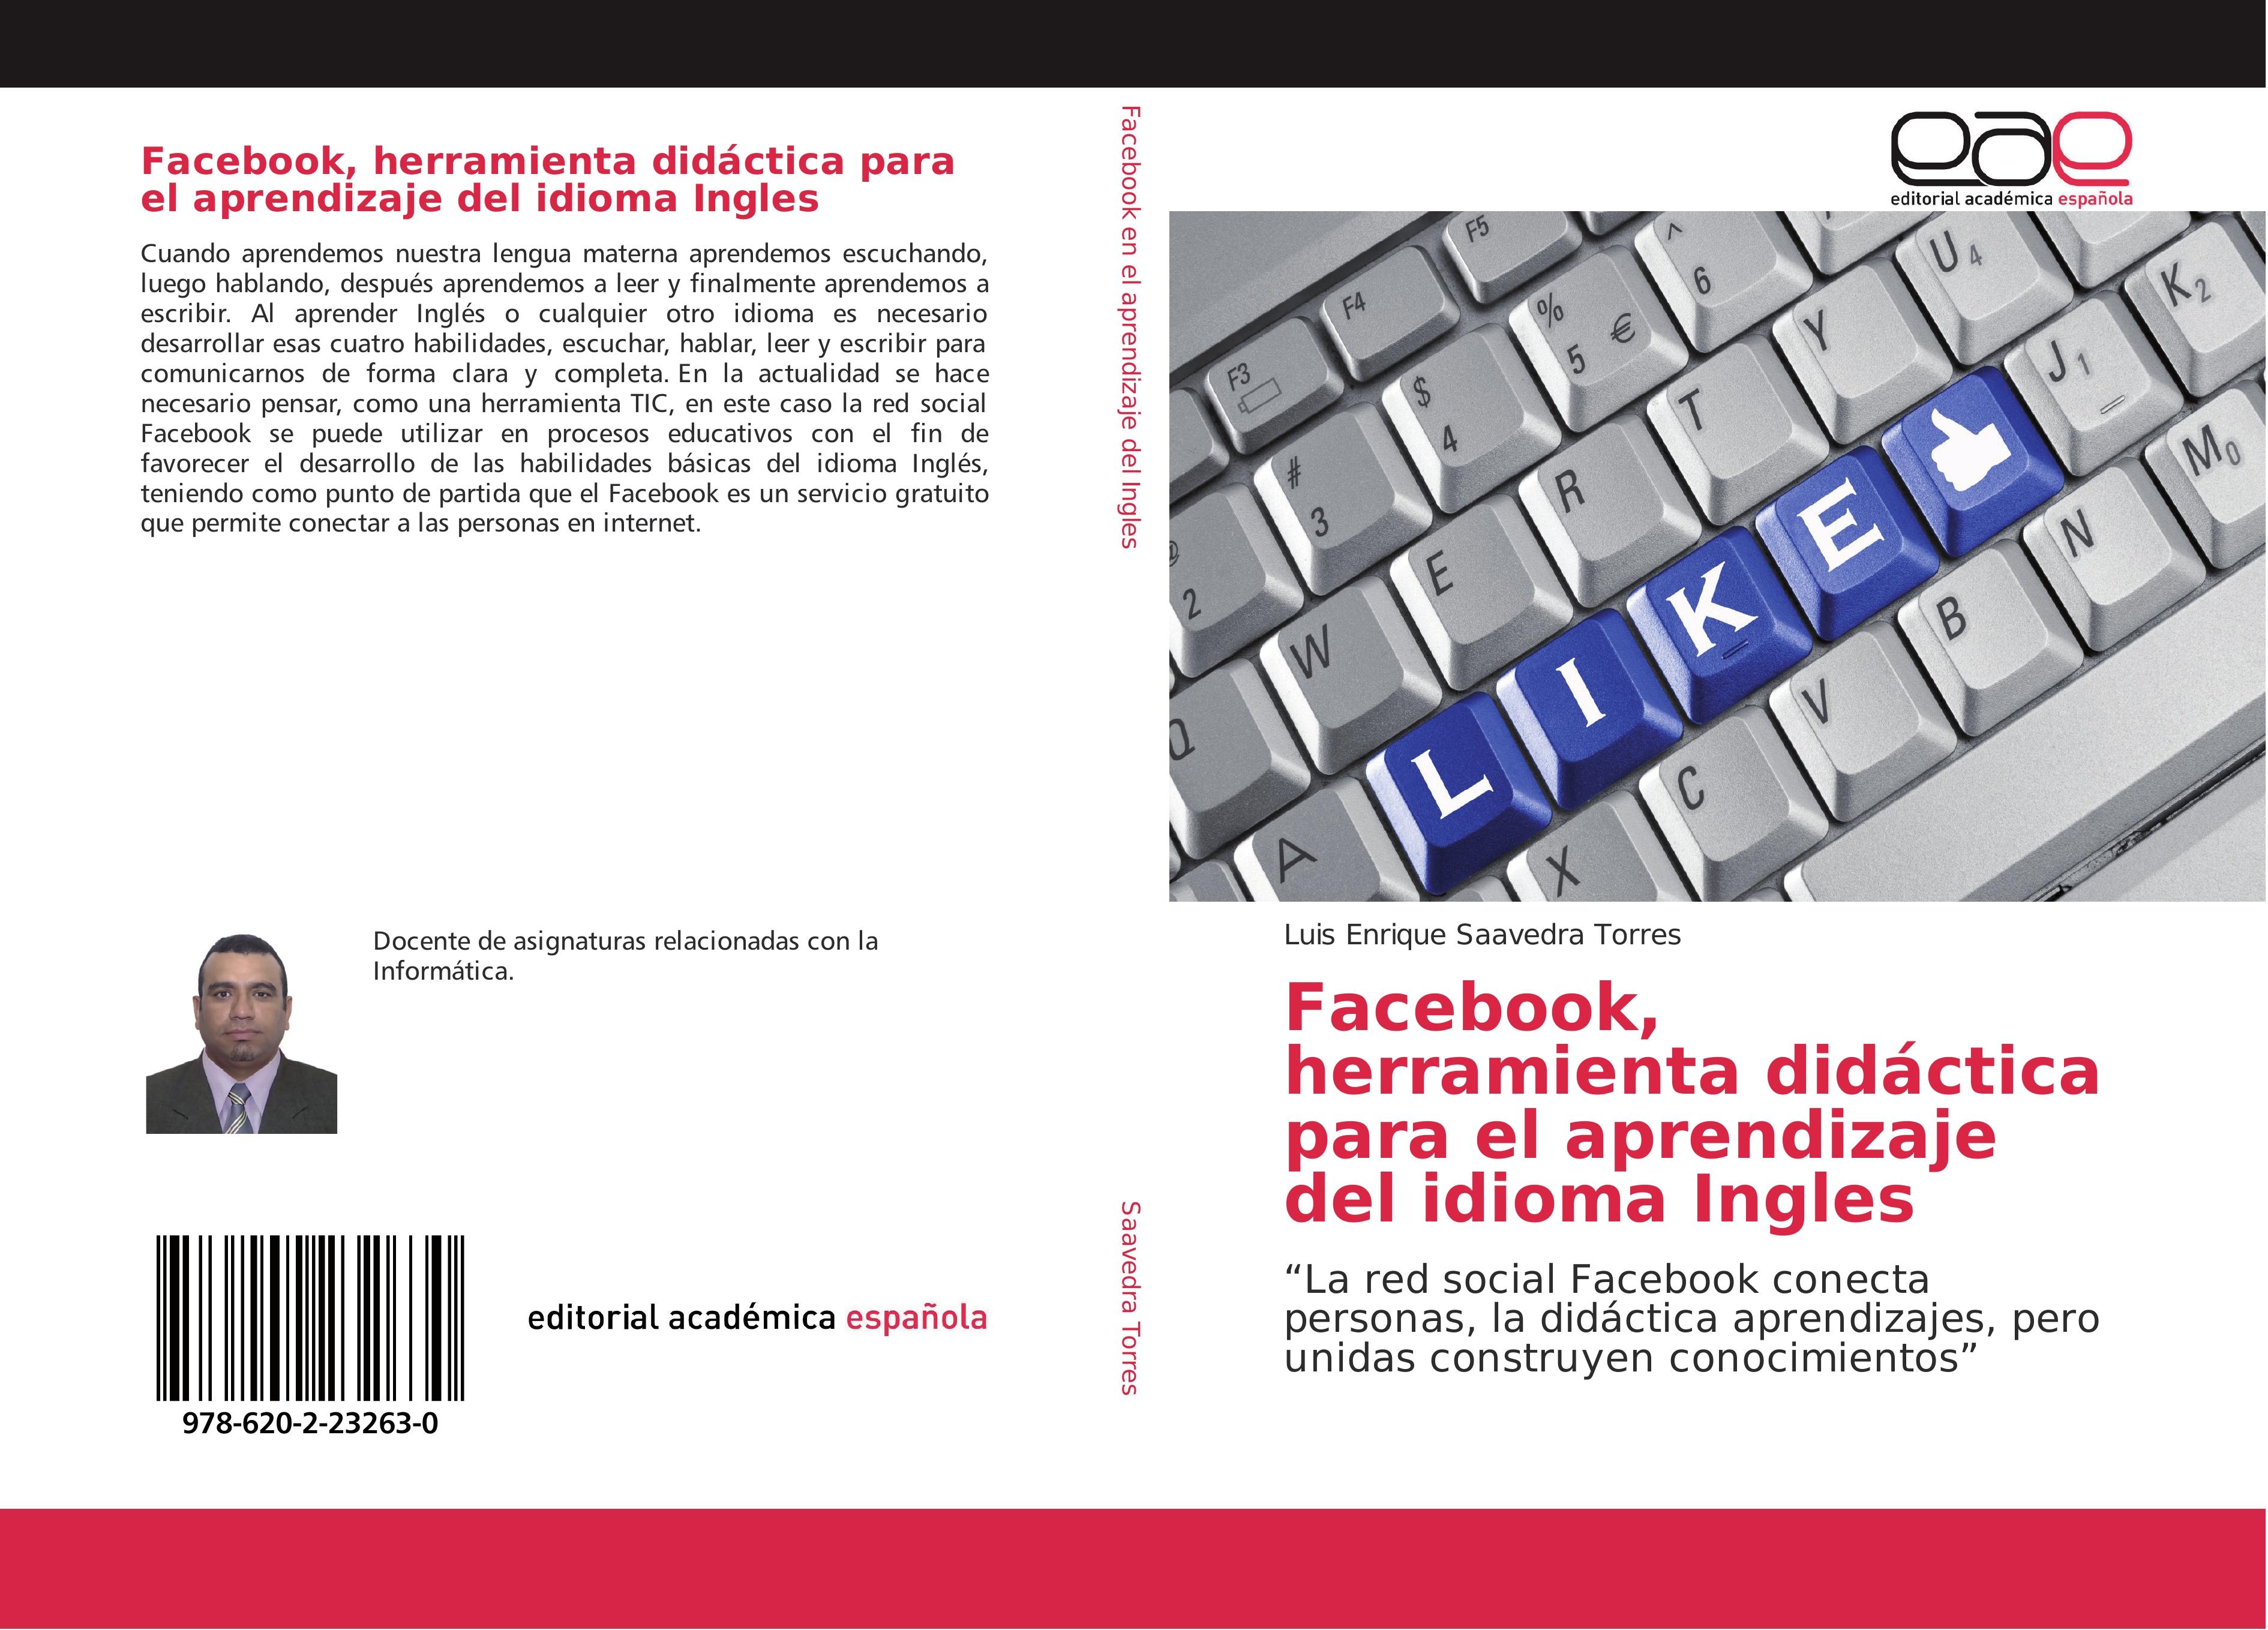 Facebook, herramienta didáctica para el aprendizaje del idioma Ingles - Luis Enrique Saavedra Torres